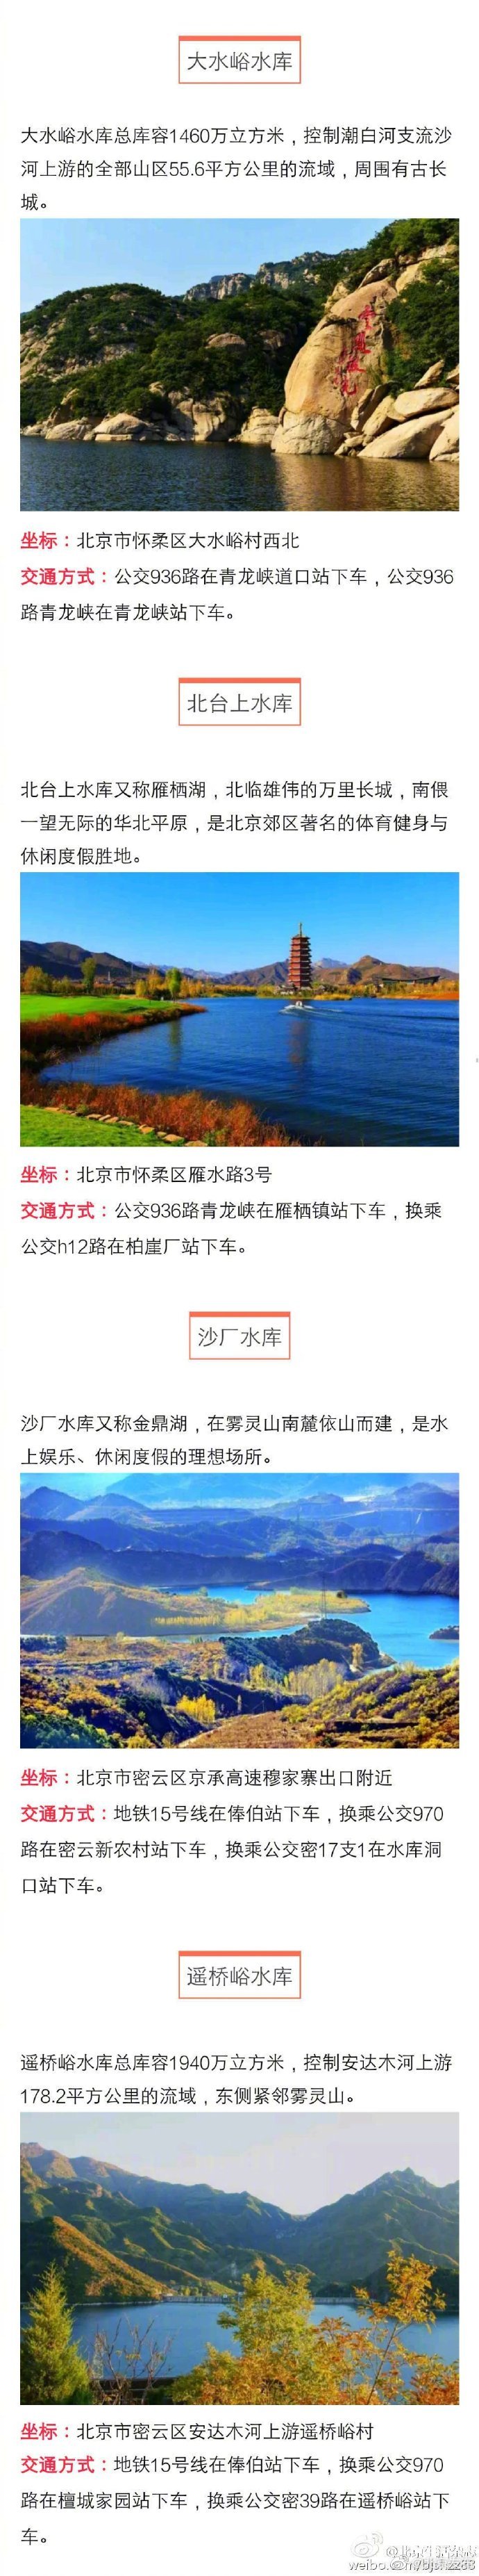 北京35处湿地美景推荐 暑假避暑好去处[墙根网]